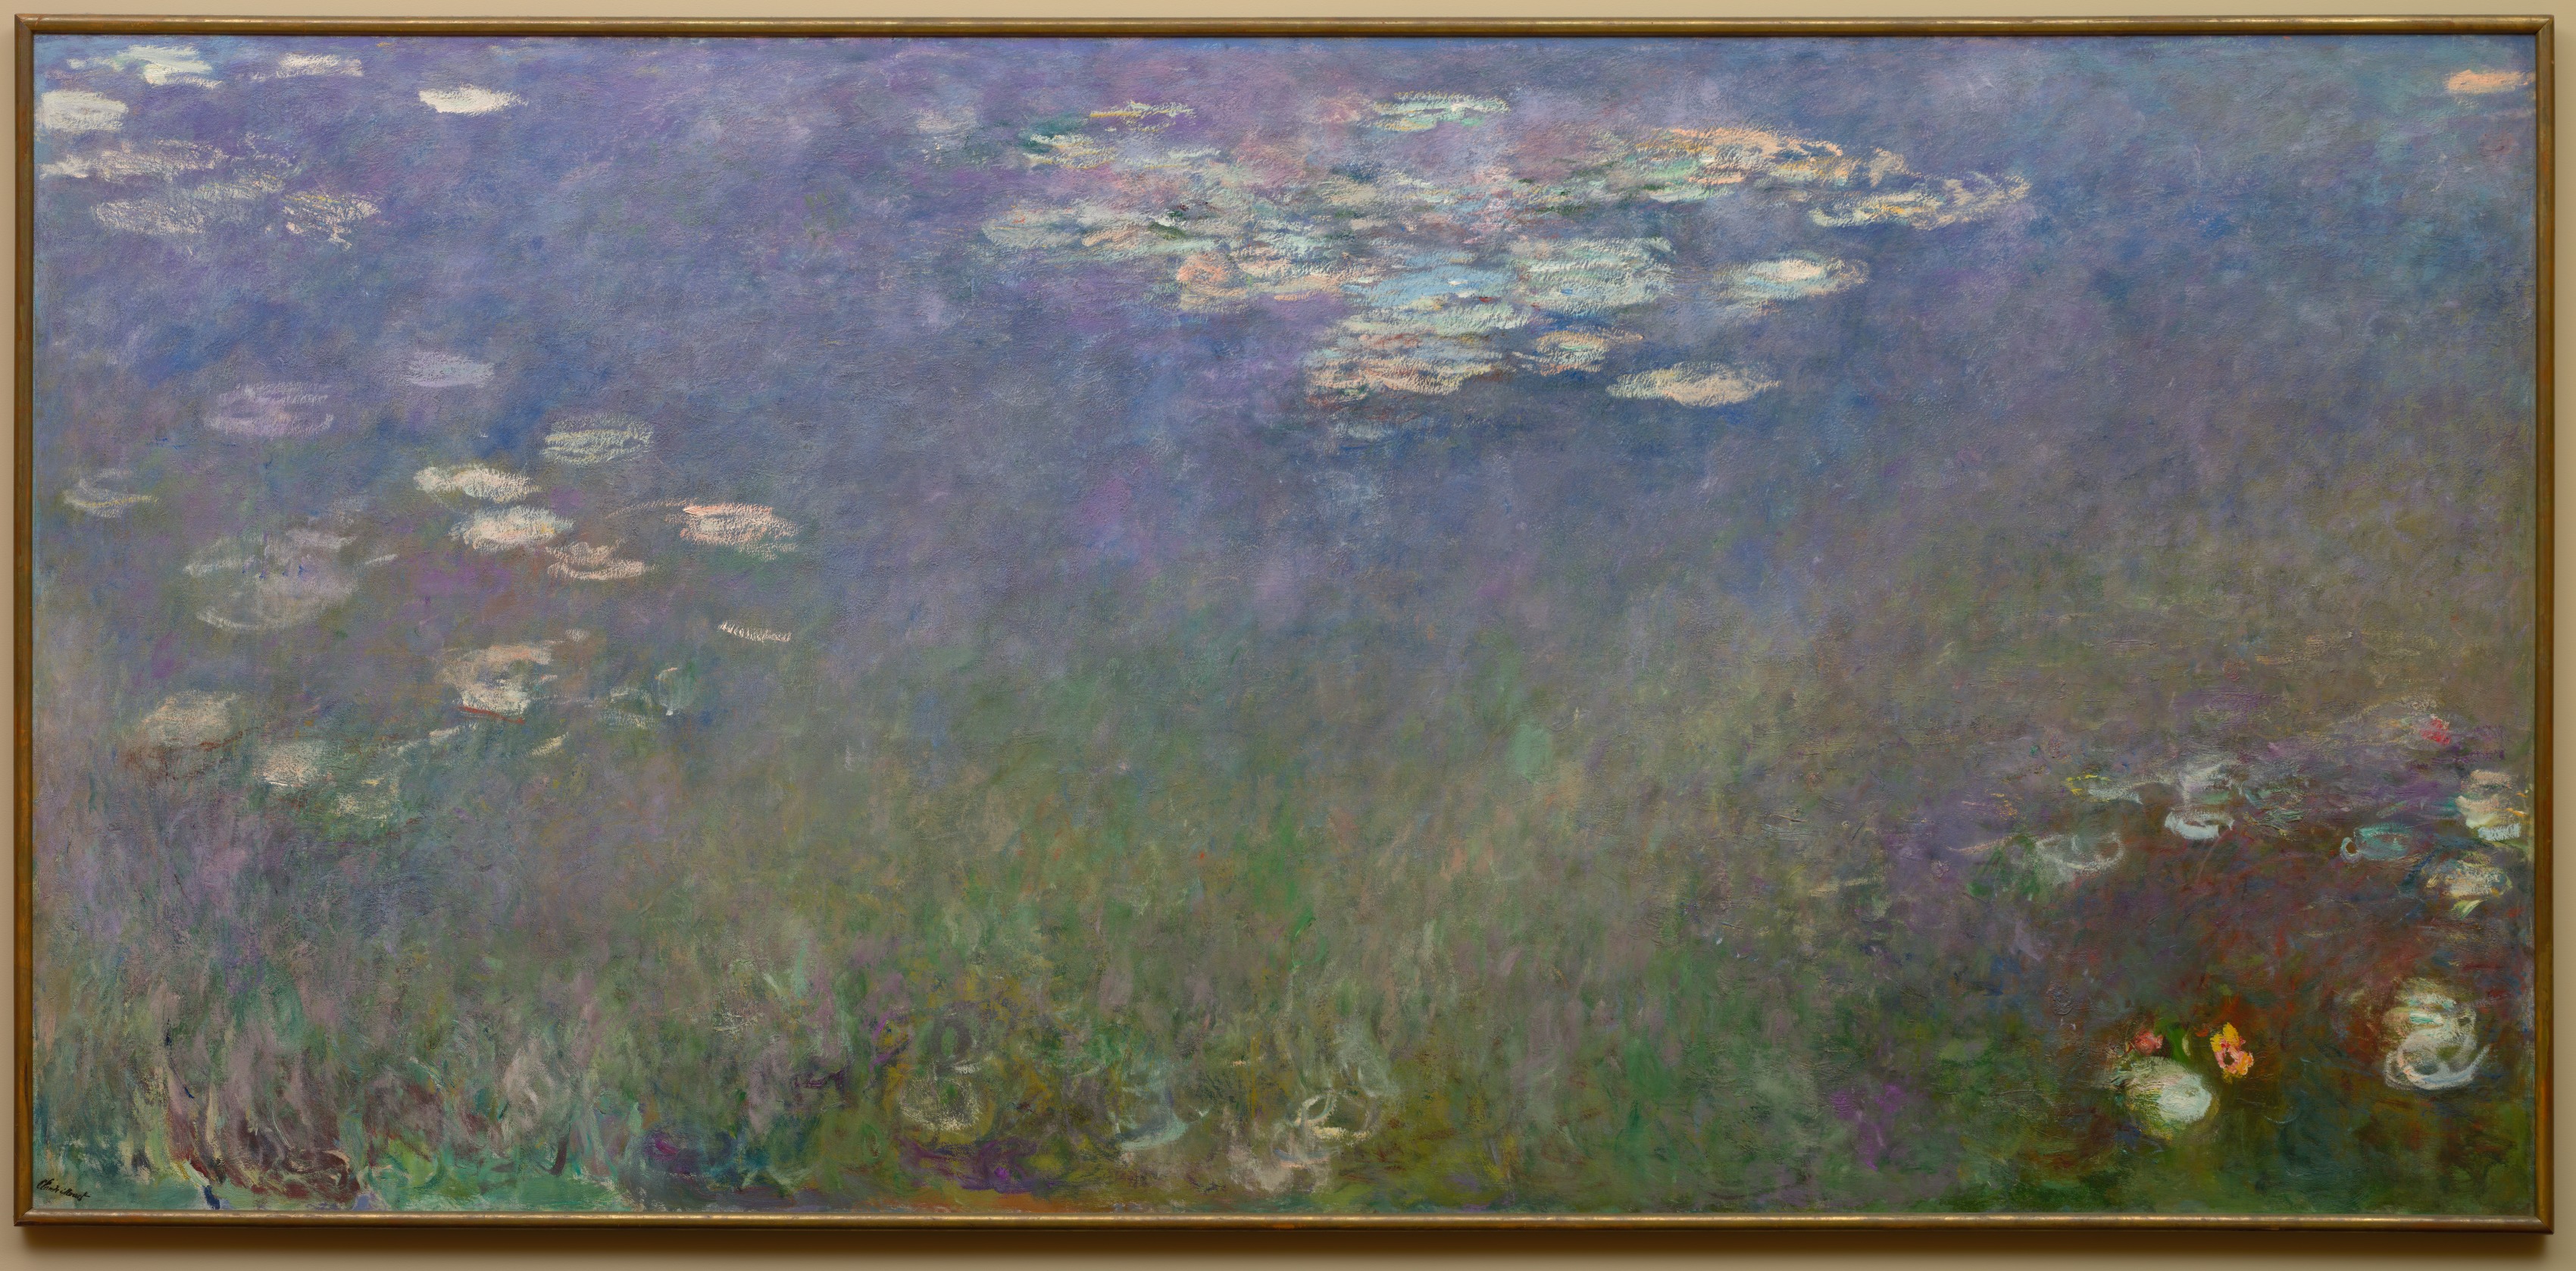 睡蓮 (アガパンサス) by Claude Monet - 1915–26年頃 - 201.3 x 425.6 cm 